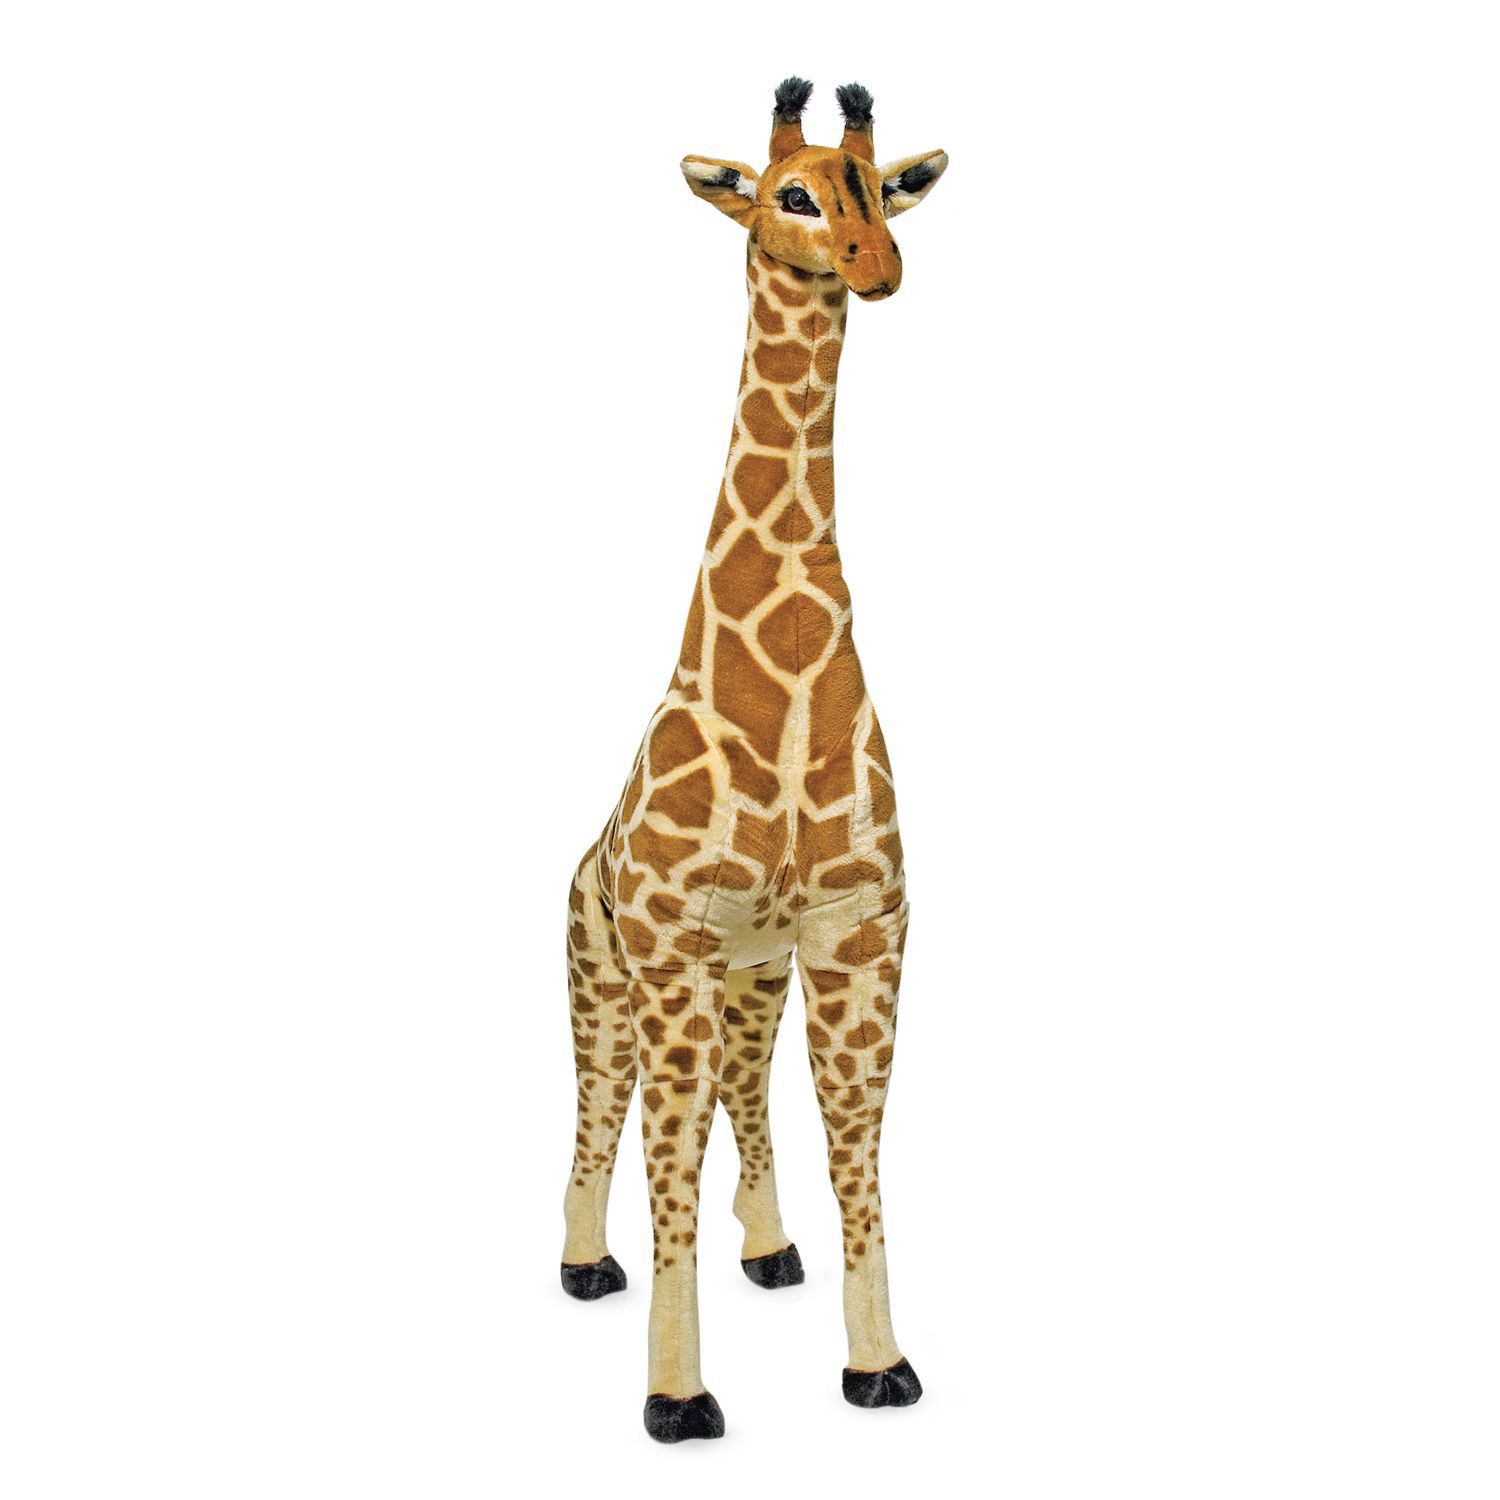 5ft stuffed giraffe